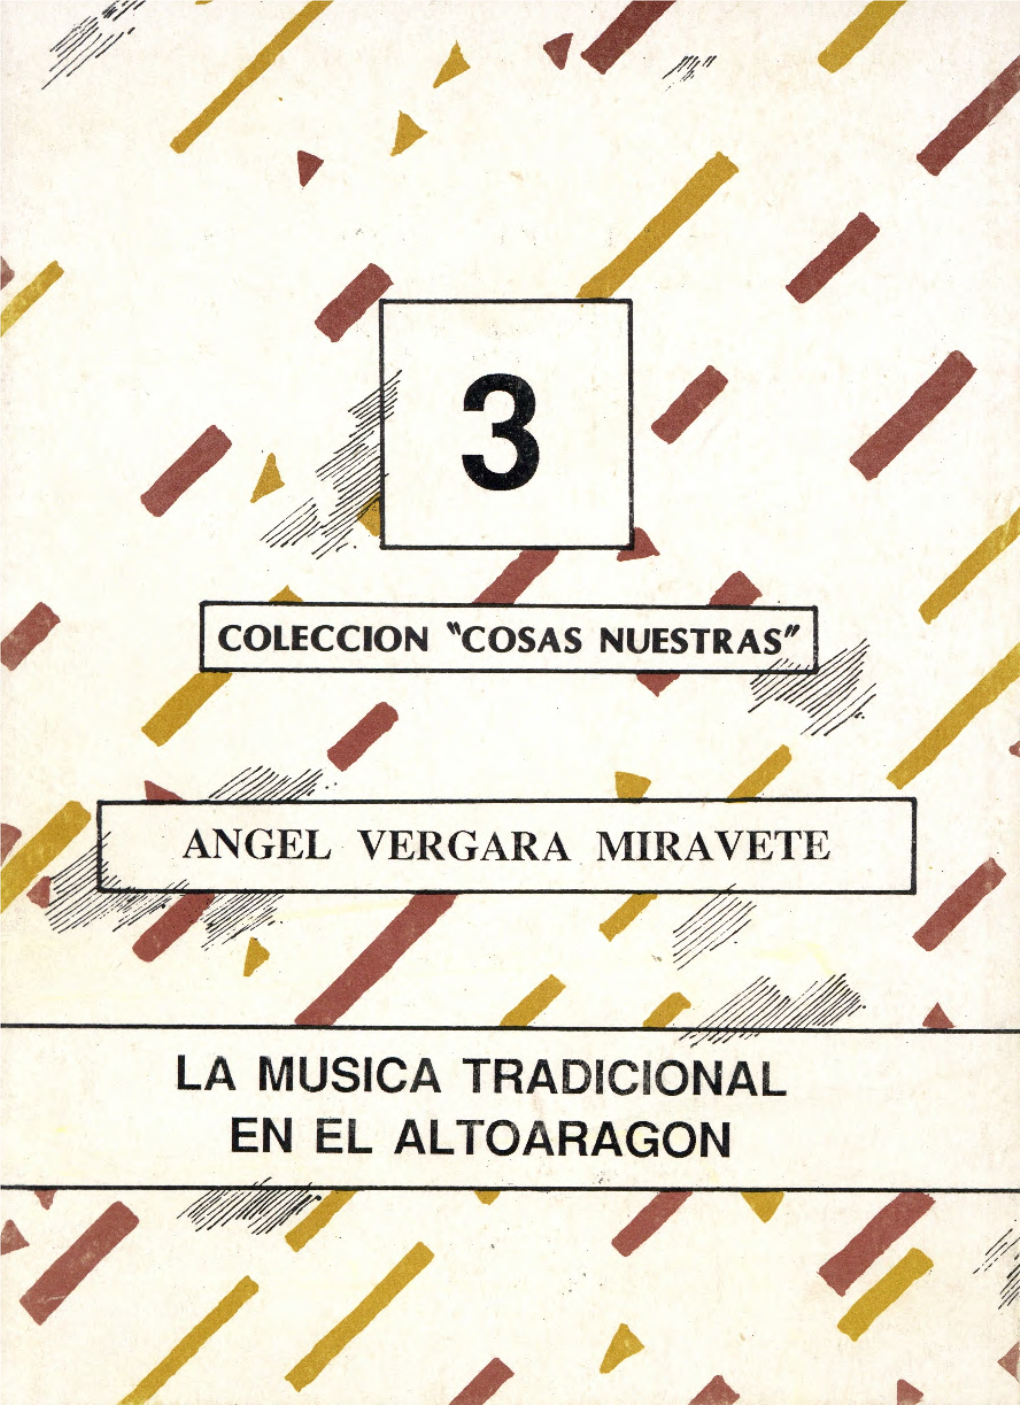 La Musica Tradicional En El Altoaragon Instituto De Estudios Altoaragoneses (C .S.I.C .)